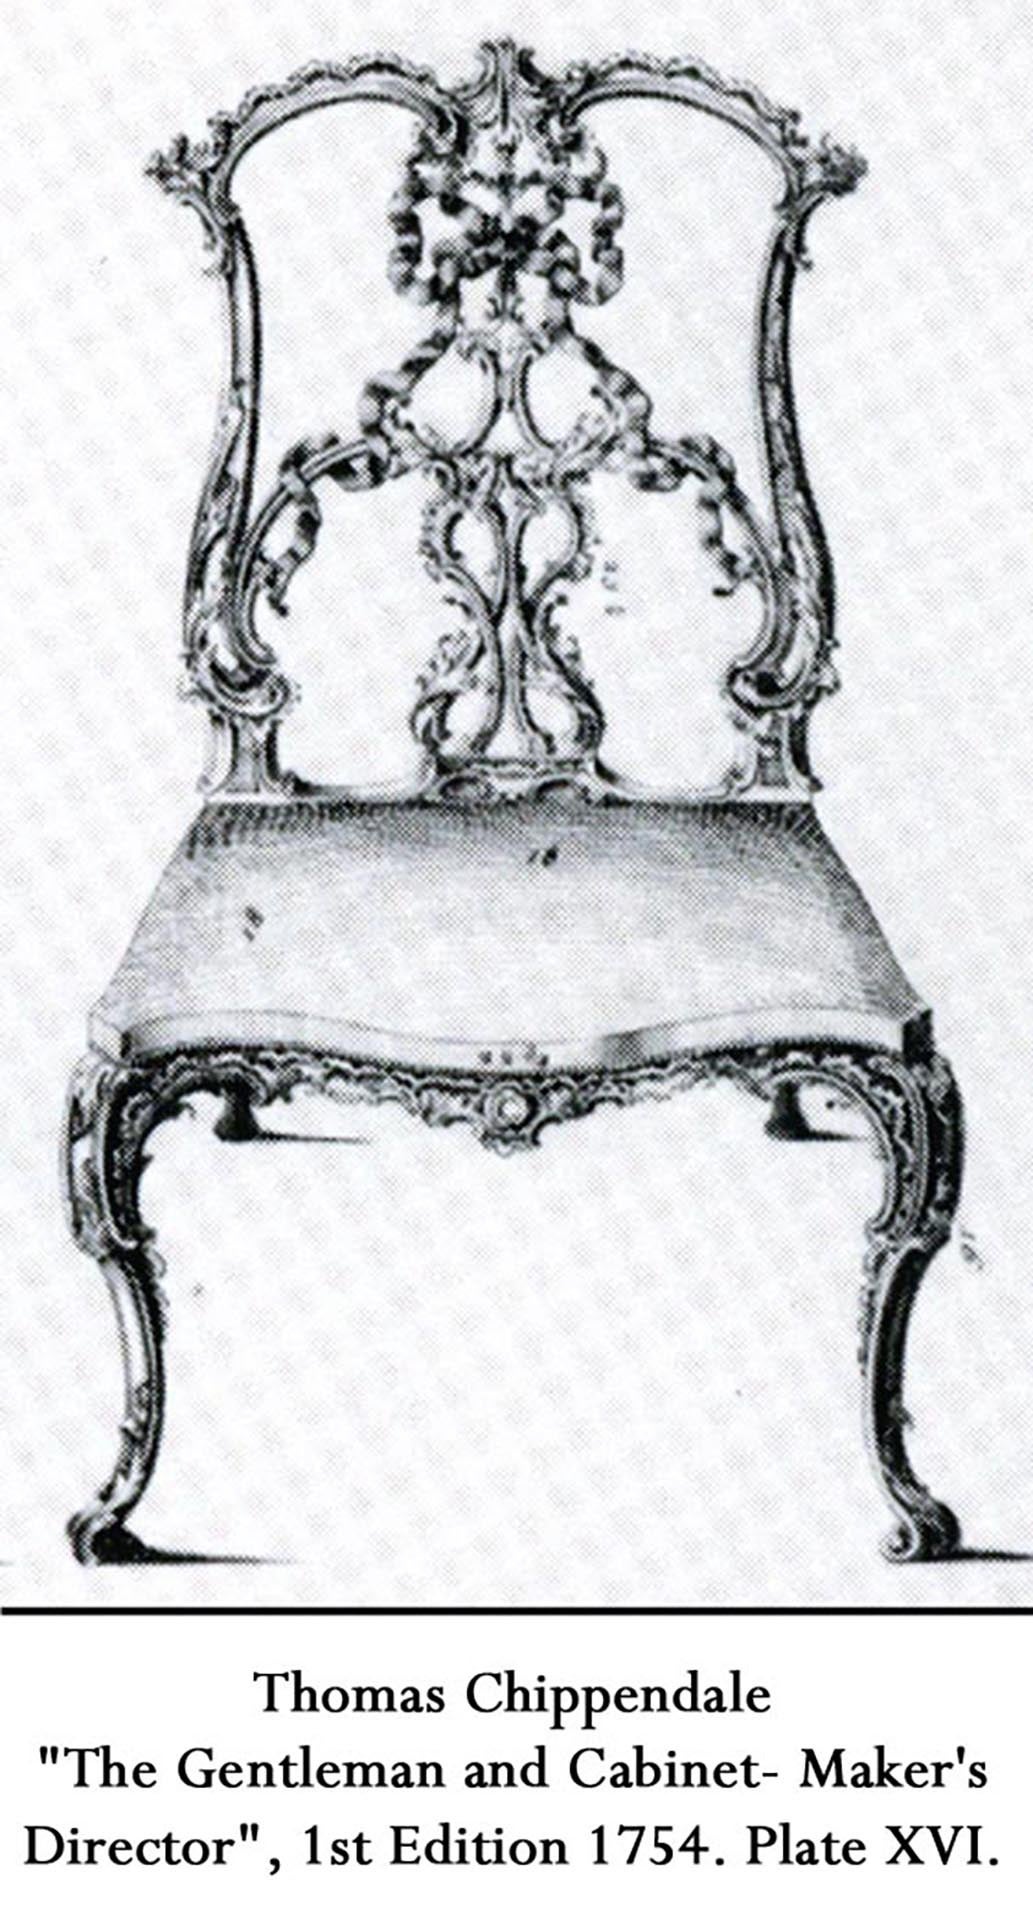 Paar englische Beistellstühle im Chippendale-Stil (19. Jh.) aus Mahagoni mit Bandrücken und goldgepolstertem Sitz
